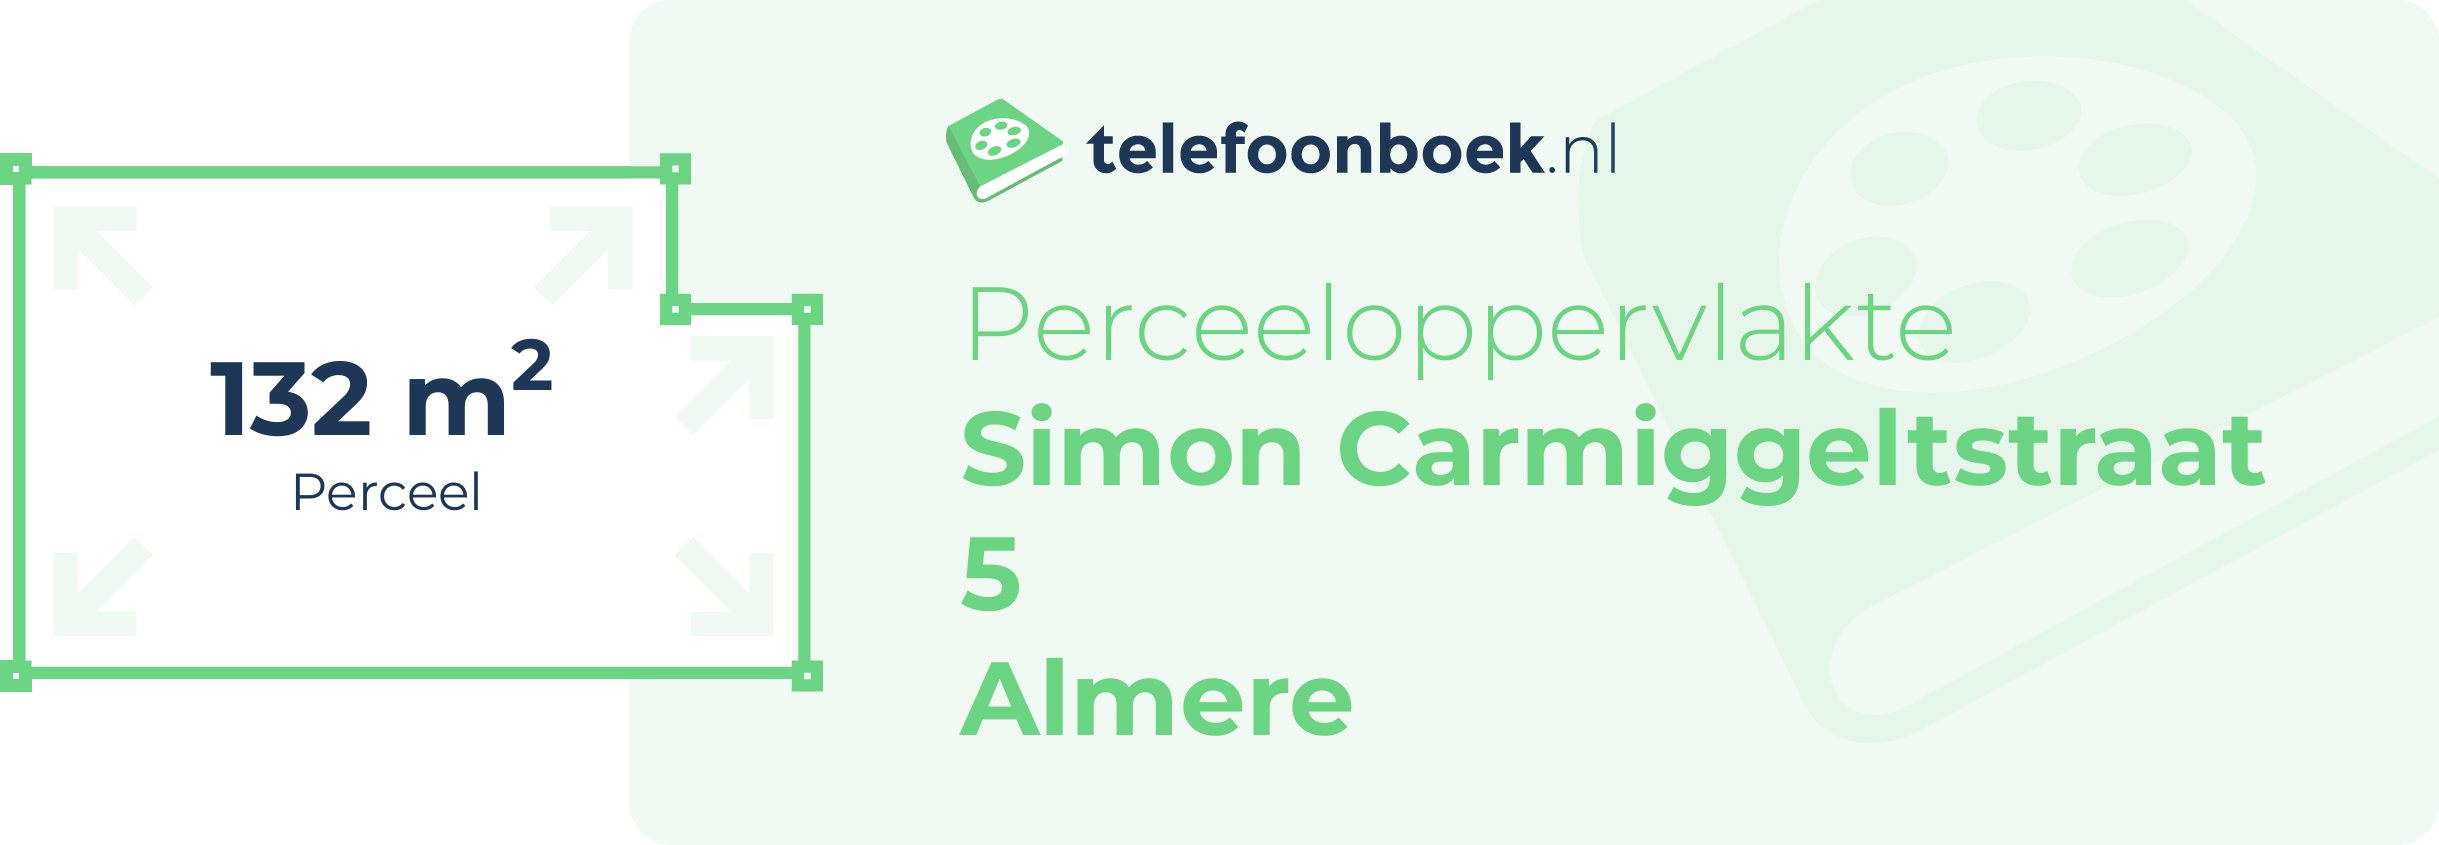 Perceeloppervlakte Simon Carmiggeltstraat 5 Almere